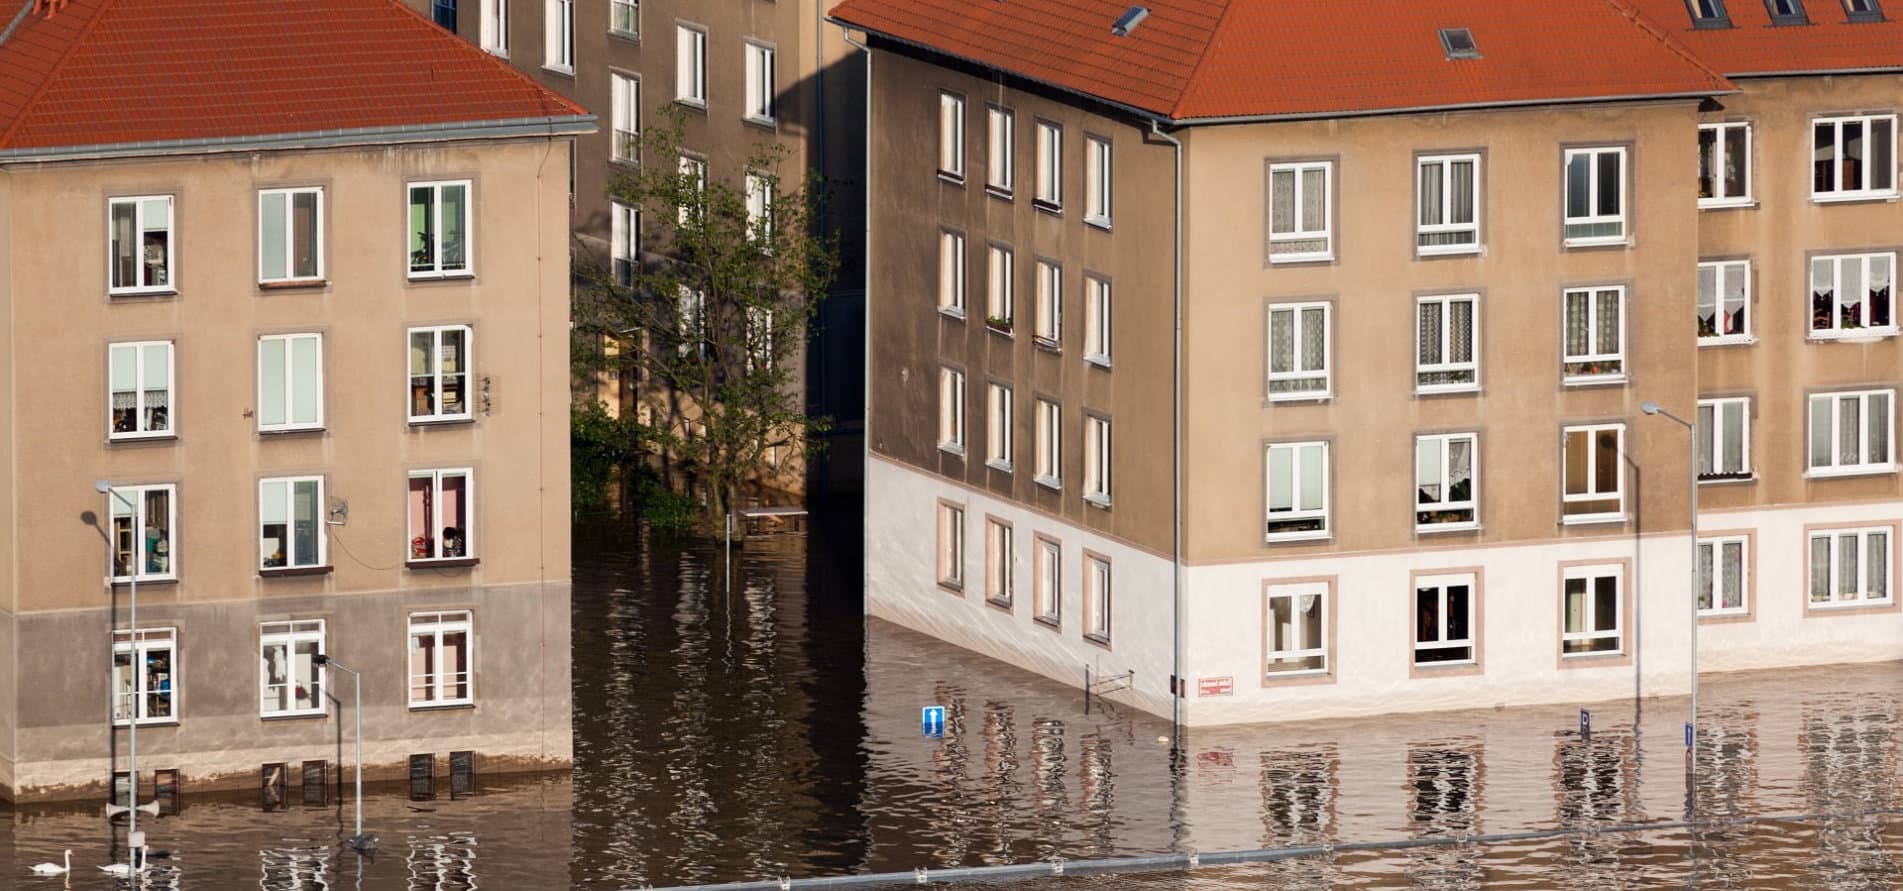 Bautrocknung bei Überschwemmung durch Trocknungstechnik Nord Hamburg